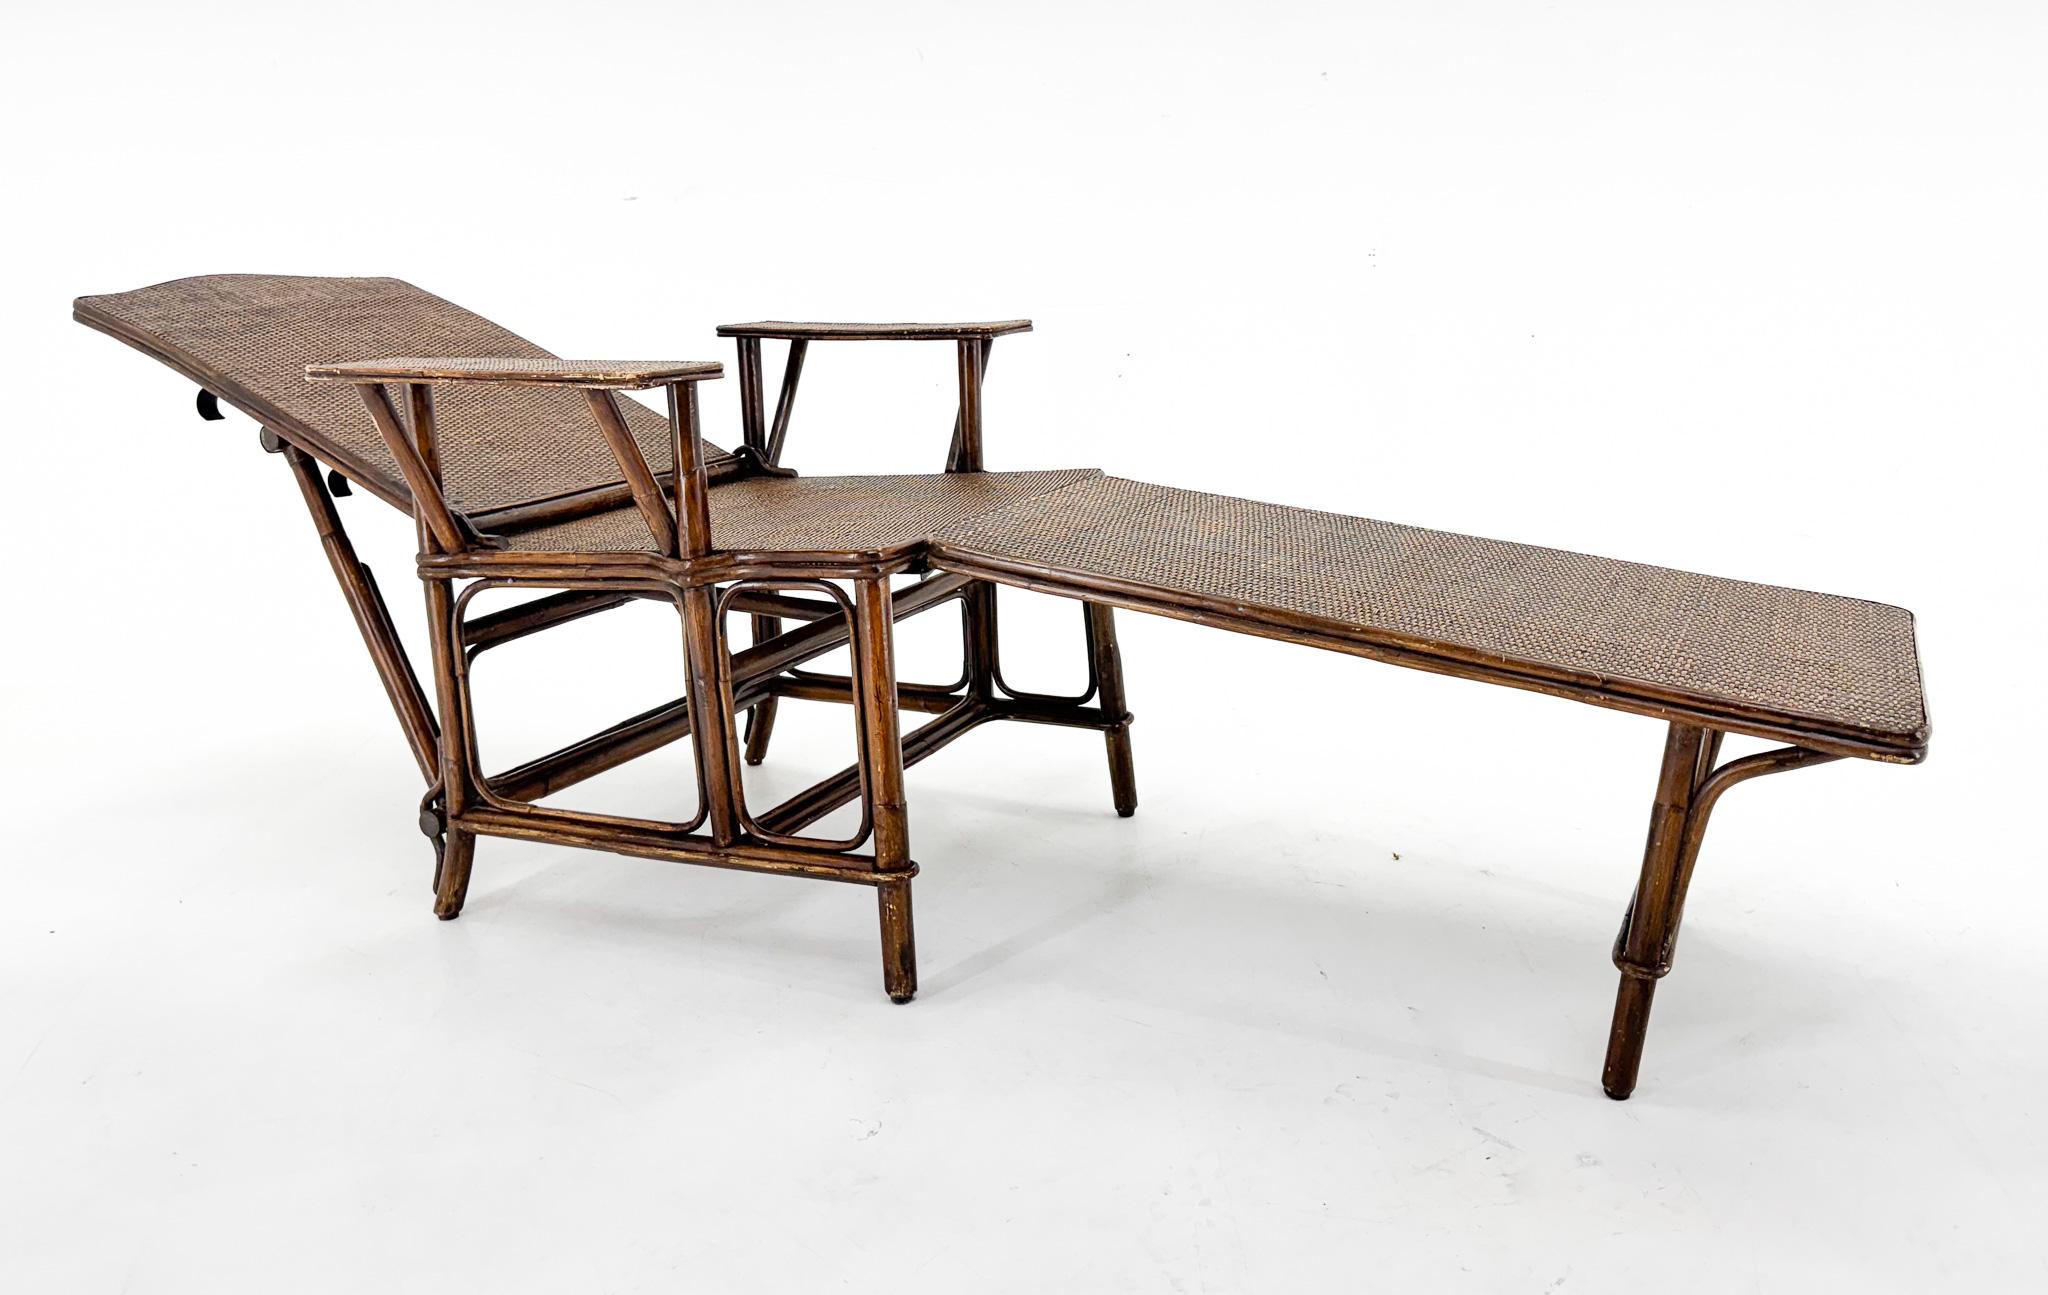 Chaise longue française réglable Art Déco en bambou et osier. La chaise longue est équipée d'un repose-pieds amovible et le dossier est réglable en trois positions. Il est en très bon état compte tenu de son âge. Bien sûr, elle présente quelques